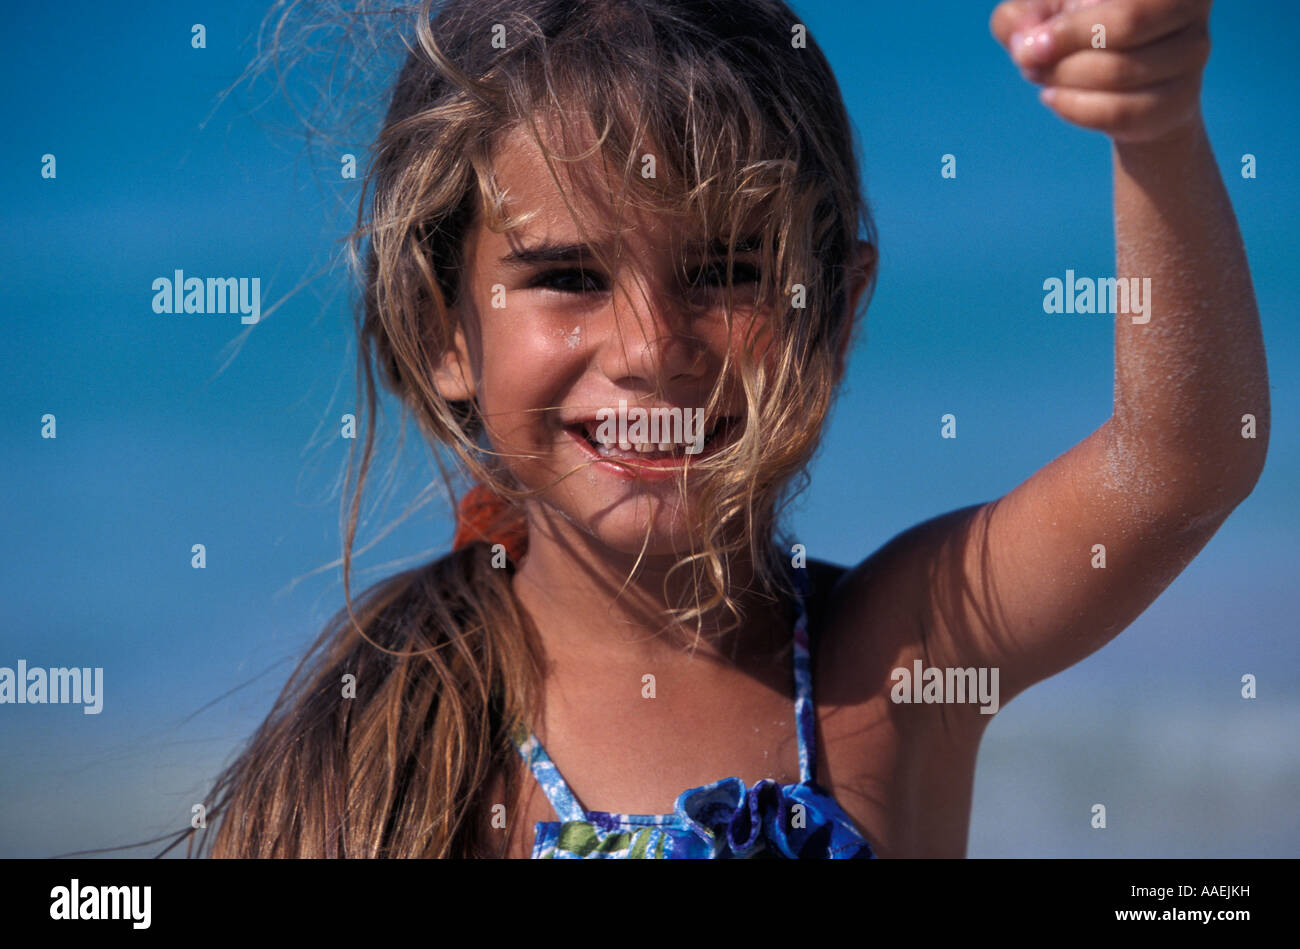 Kleine Mädchen spielen mit Sand Varadero Strand Varadero Kuba Karibik Stockfoto